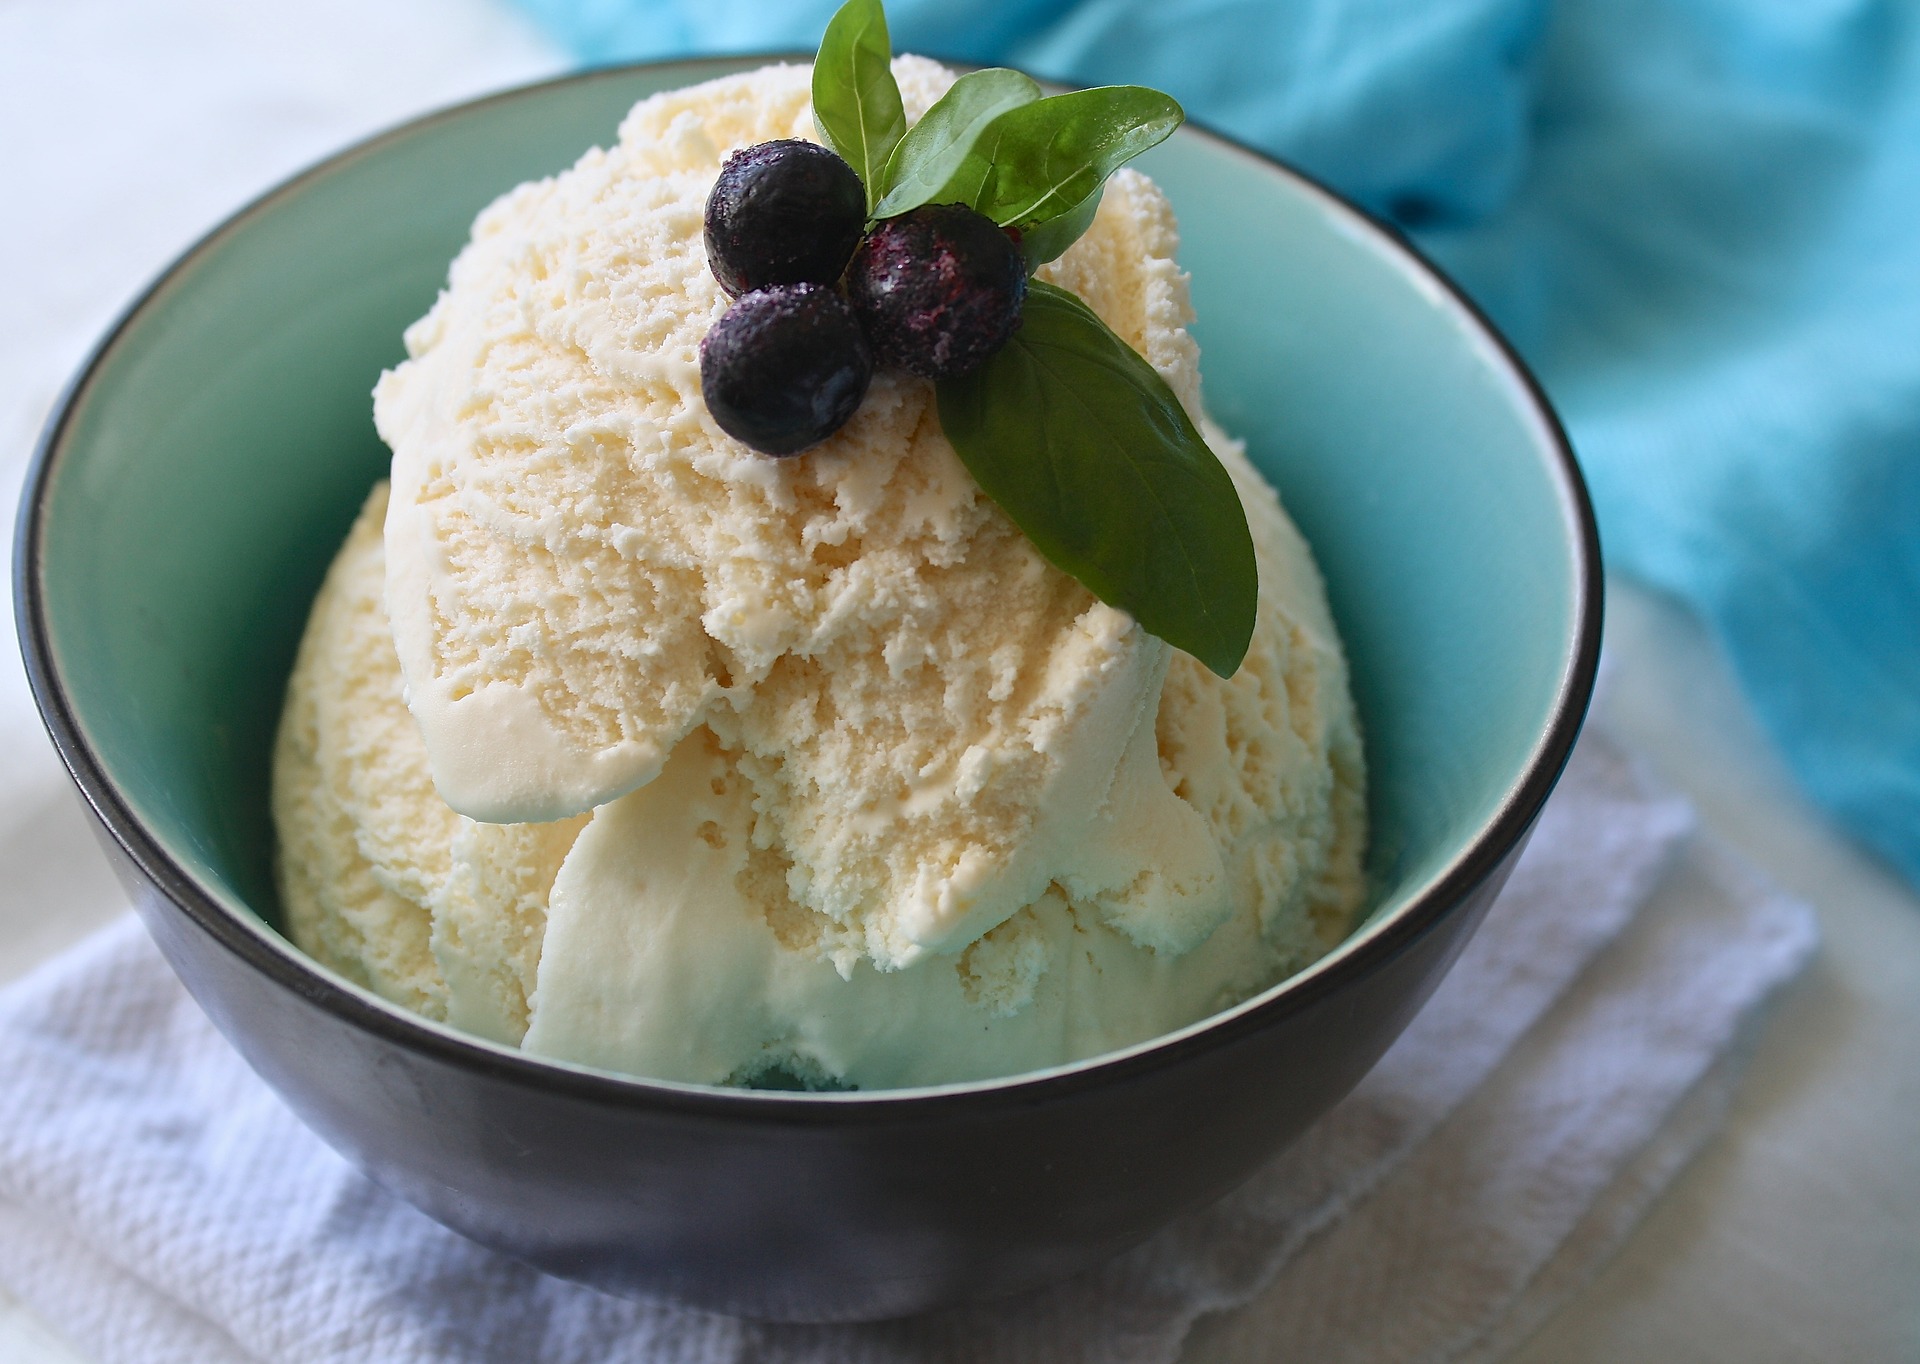 カロリーの低いアイスは 家庭でできるアイスクリームの作り方もご紹介 Verygood 恋活 婚活メディア